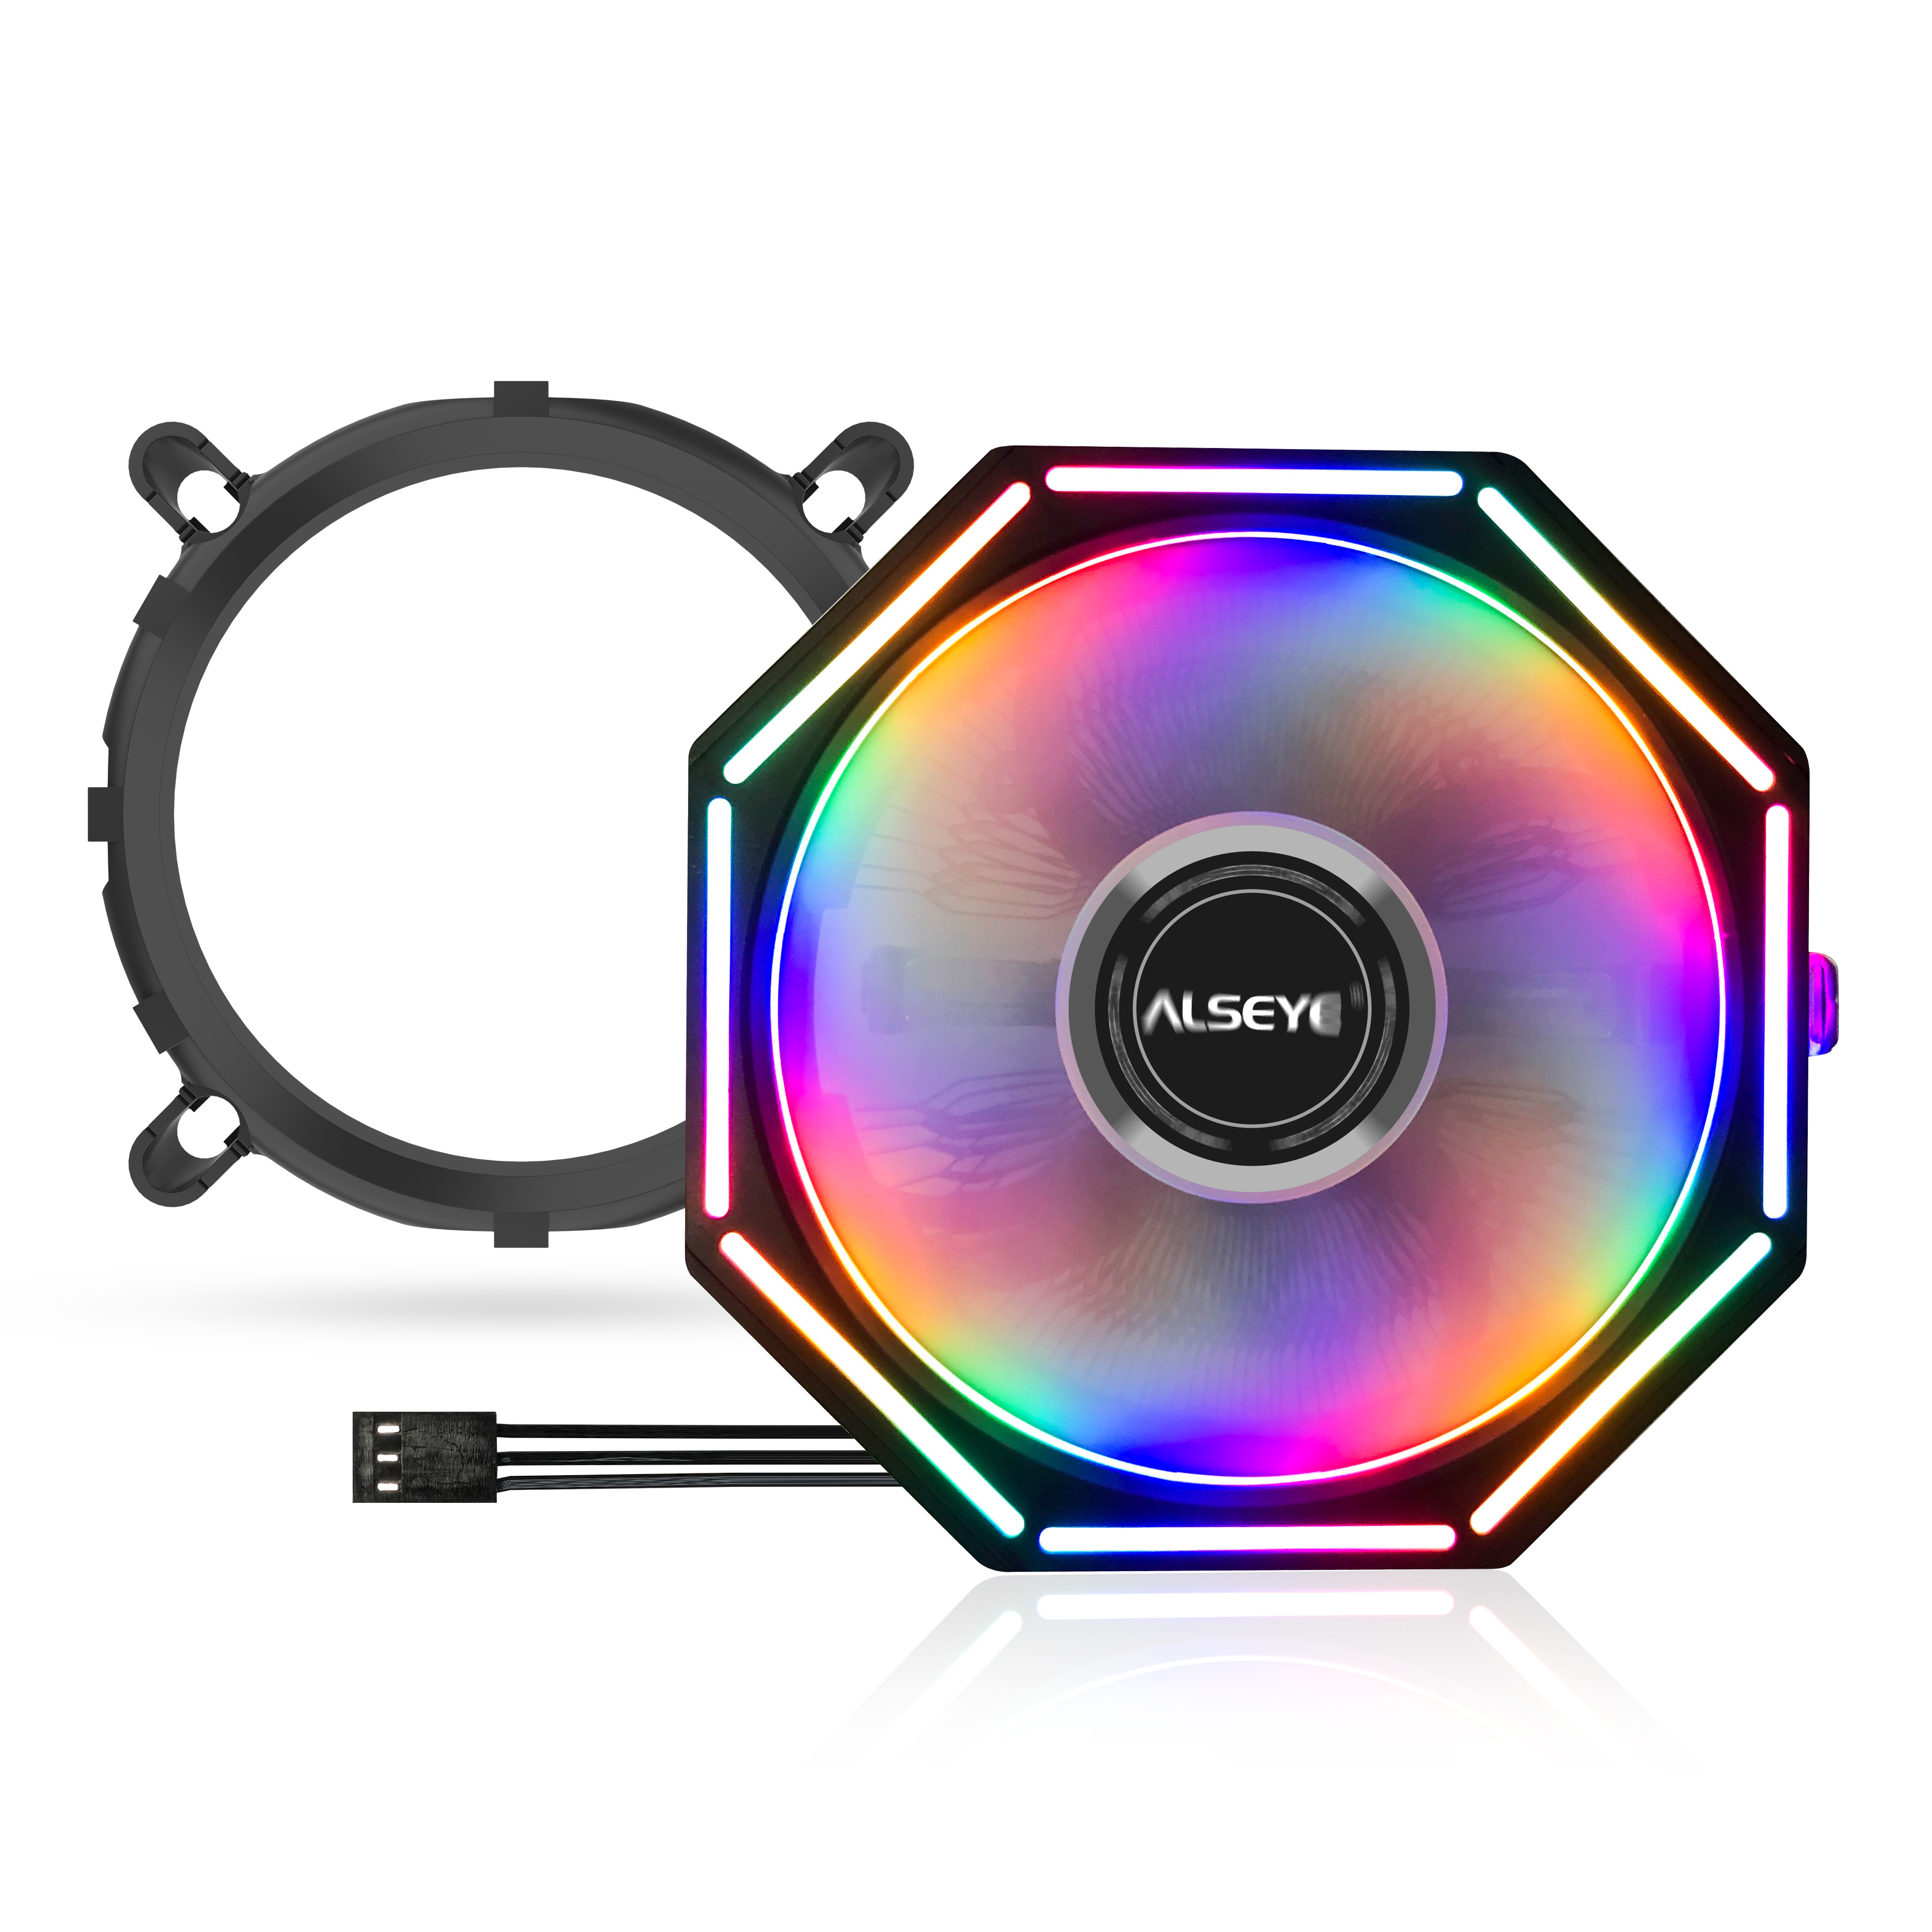 Кулер для процессора Alseye O120Z PLUS для Socket/115x/1200/AM2/AM2+/AM3/AM3+/FM1/AM4, 120мм, 1700rpm, 33 дБ, 95Вт, 3-pin, Al, RGB (O120Z)